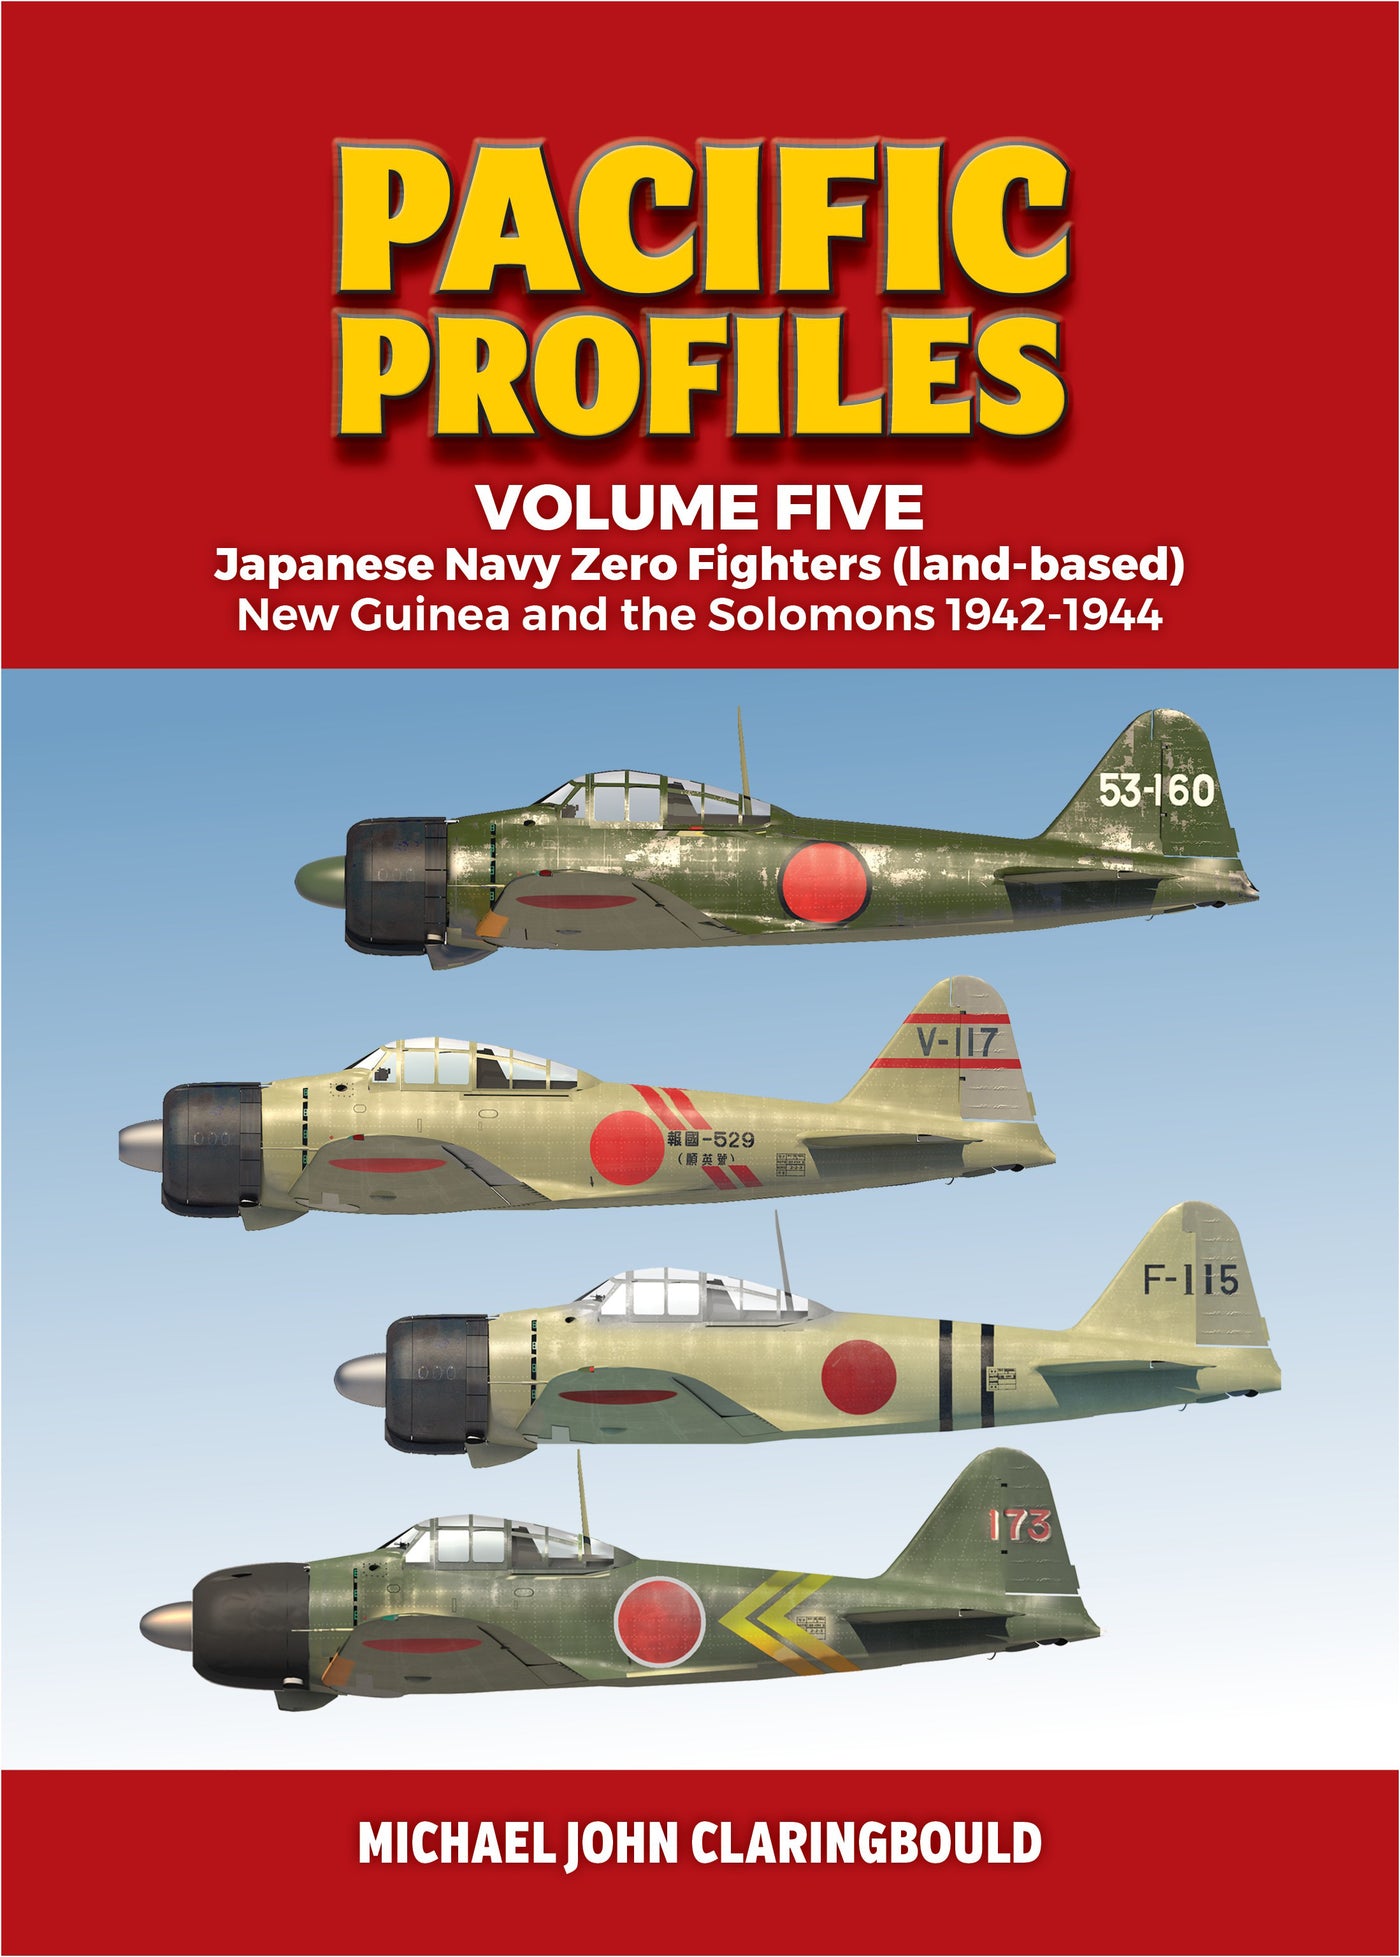 Pacific Profiles Volume Five